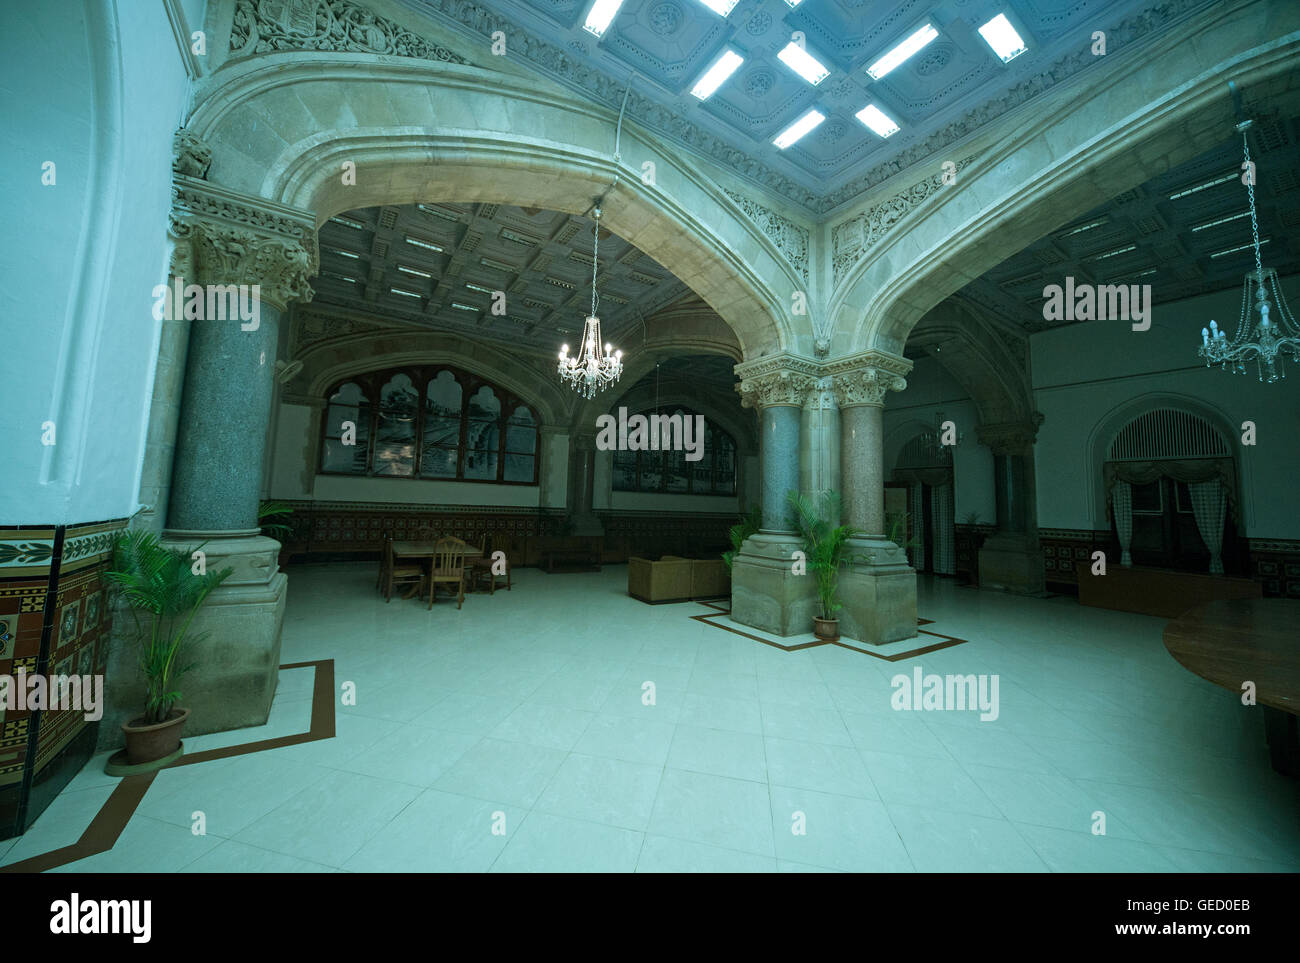 Das Bild der Architektur der Speisesaal im CST-Station oder VT, Mumbai Indien Stockfoto